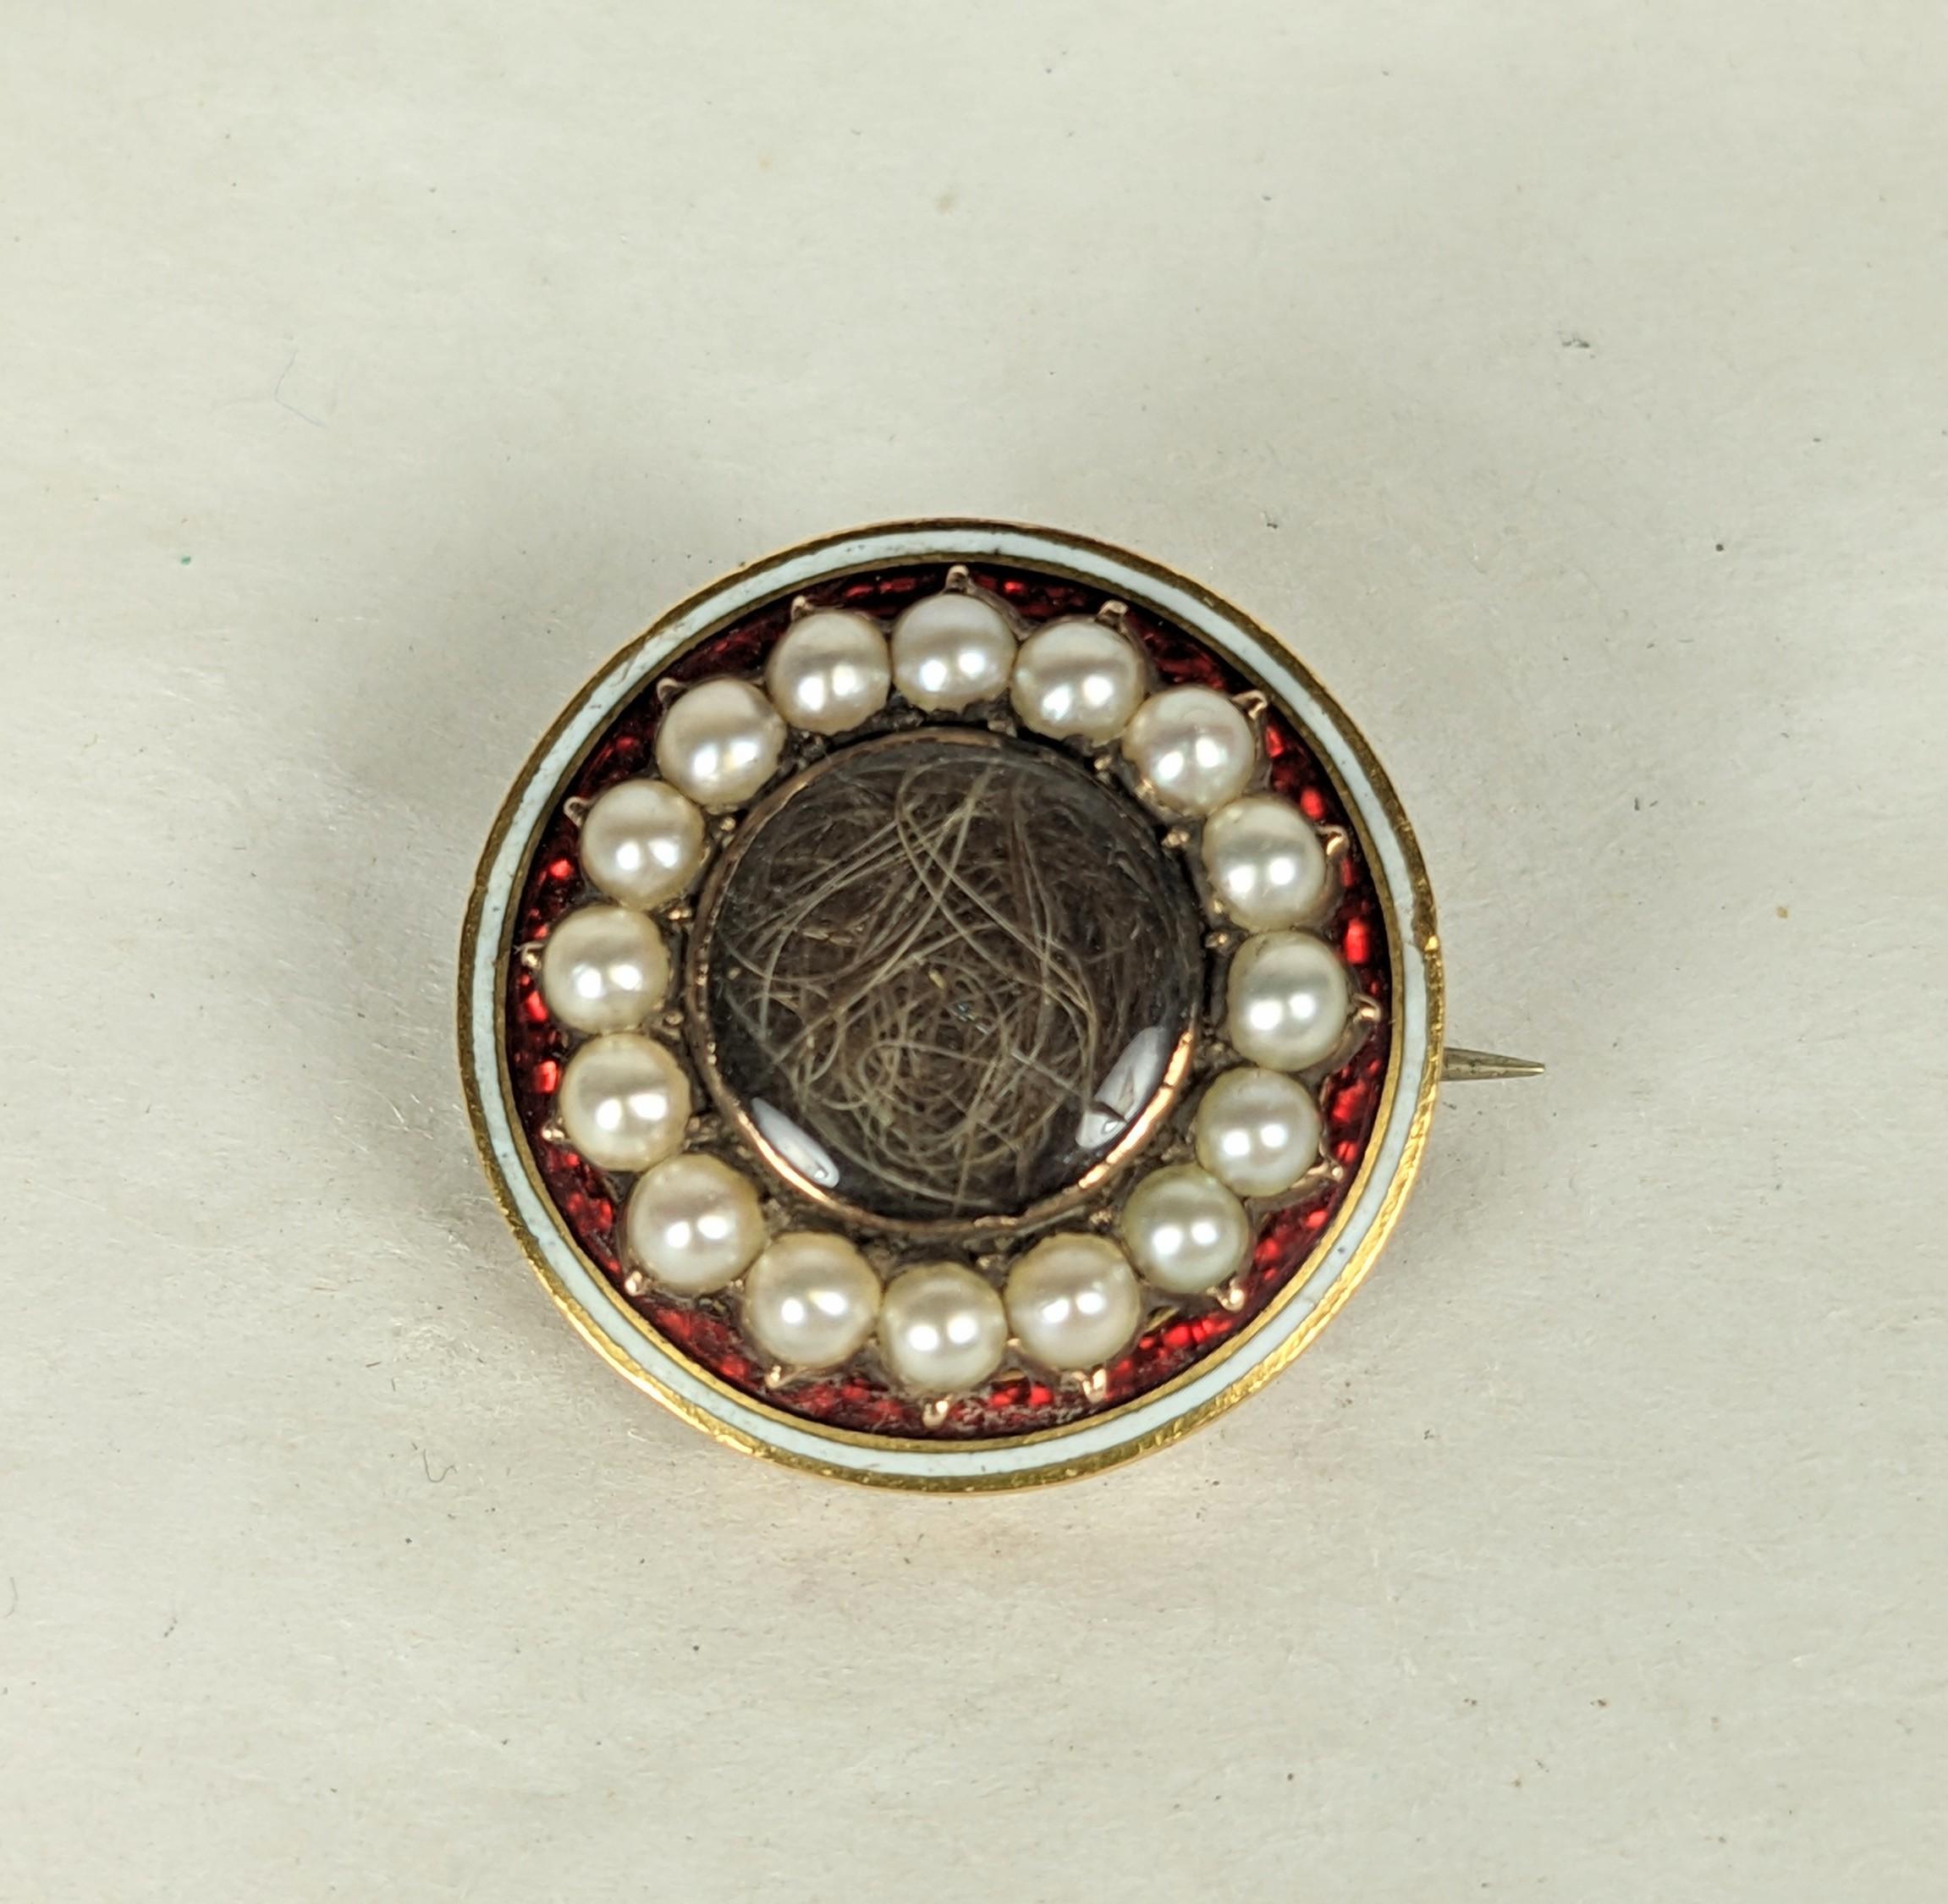 Georgianische Emaille-Gedenkbrosche mit Haarfach unter Glas aus dem frühen 19. Jahrhundert. Set in 10K Gold mit ungewöhnlicher Rubin-Emaille mit halben Saatperlen. Ursprünglich war dies ein Armband- oder Kettenverschluss und wurde später im 19.